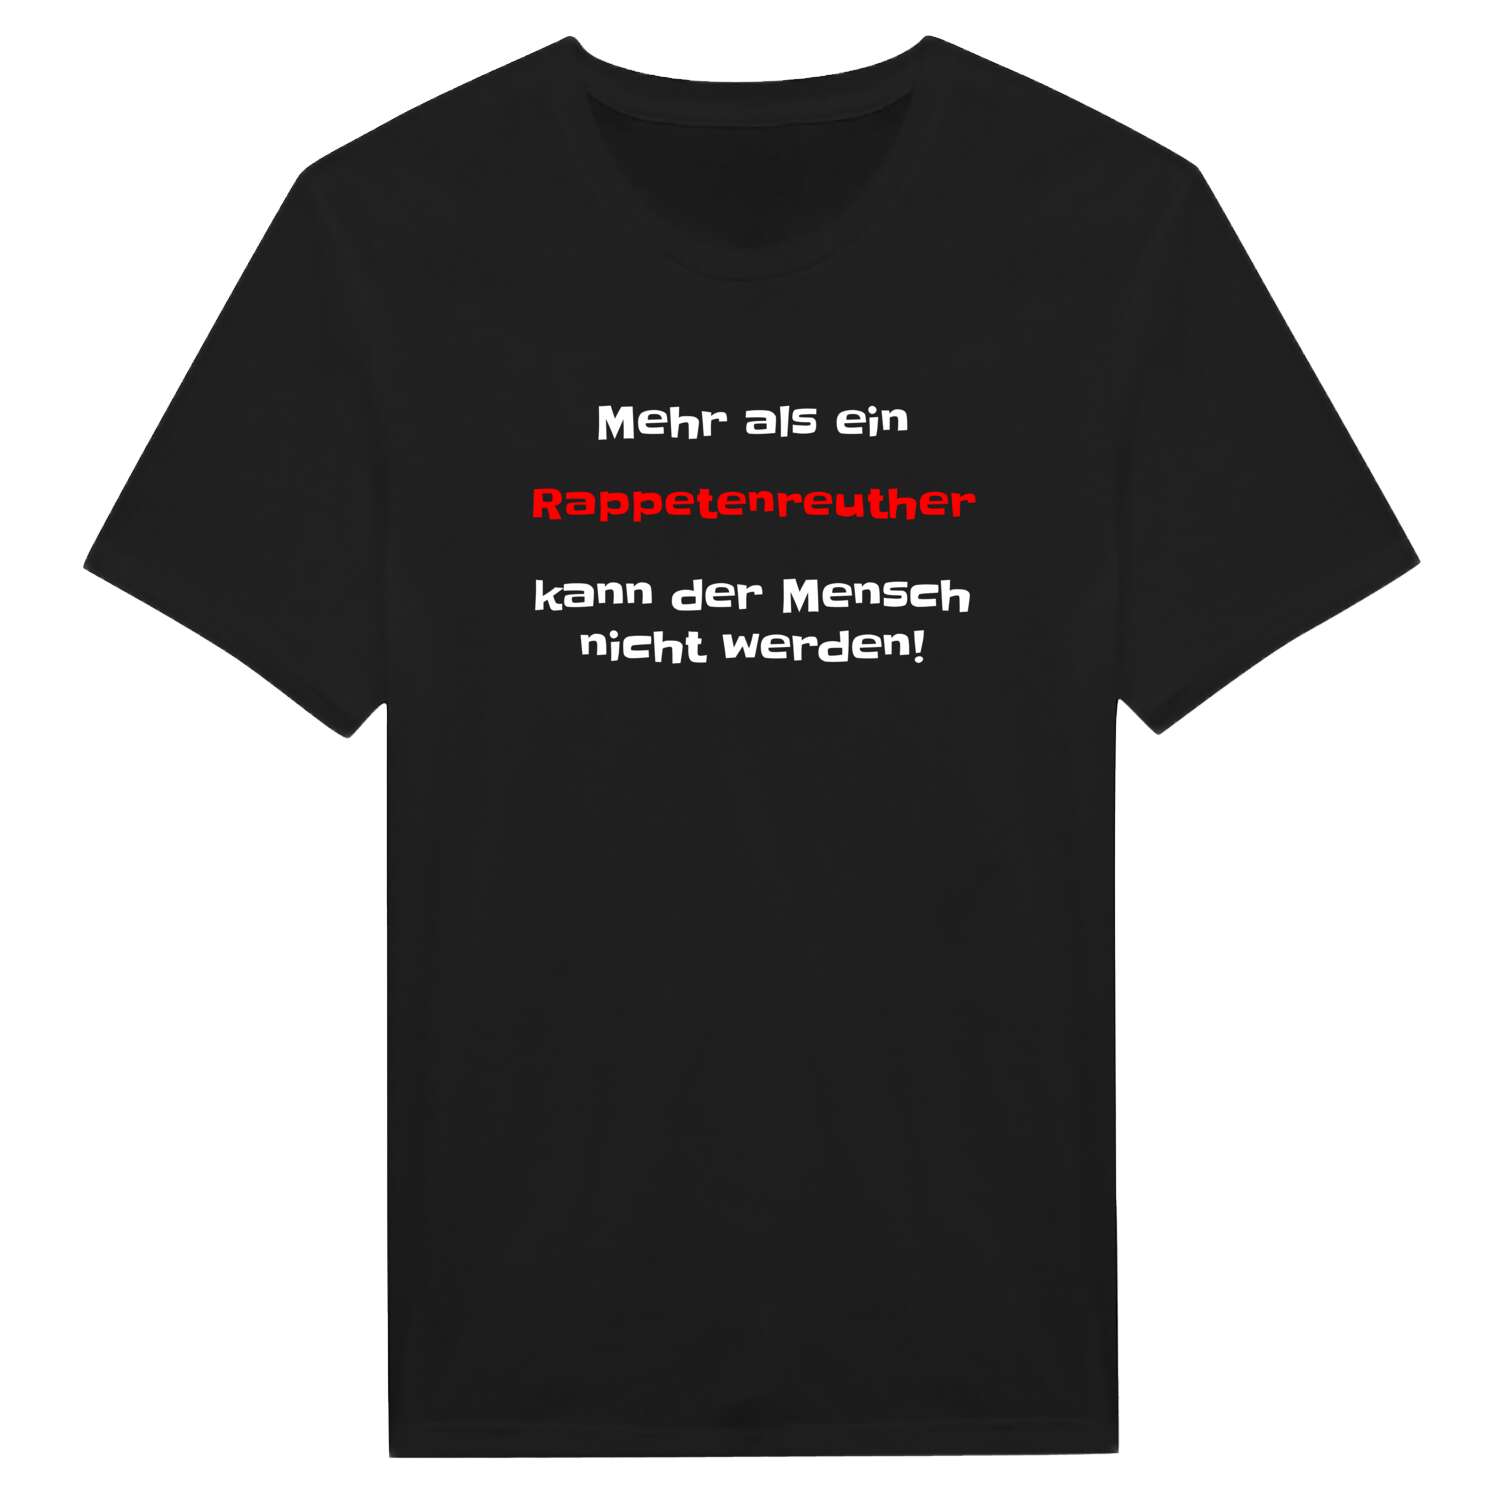 Rappetenreuth T-Shirt »Mehr als ein«